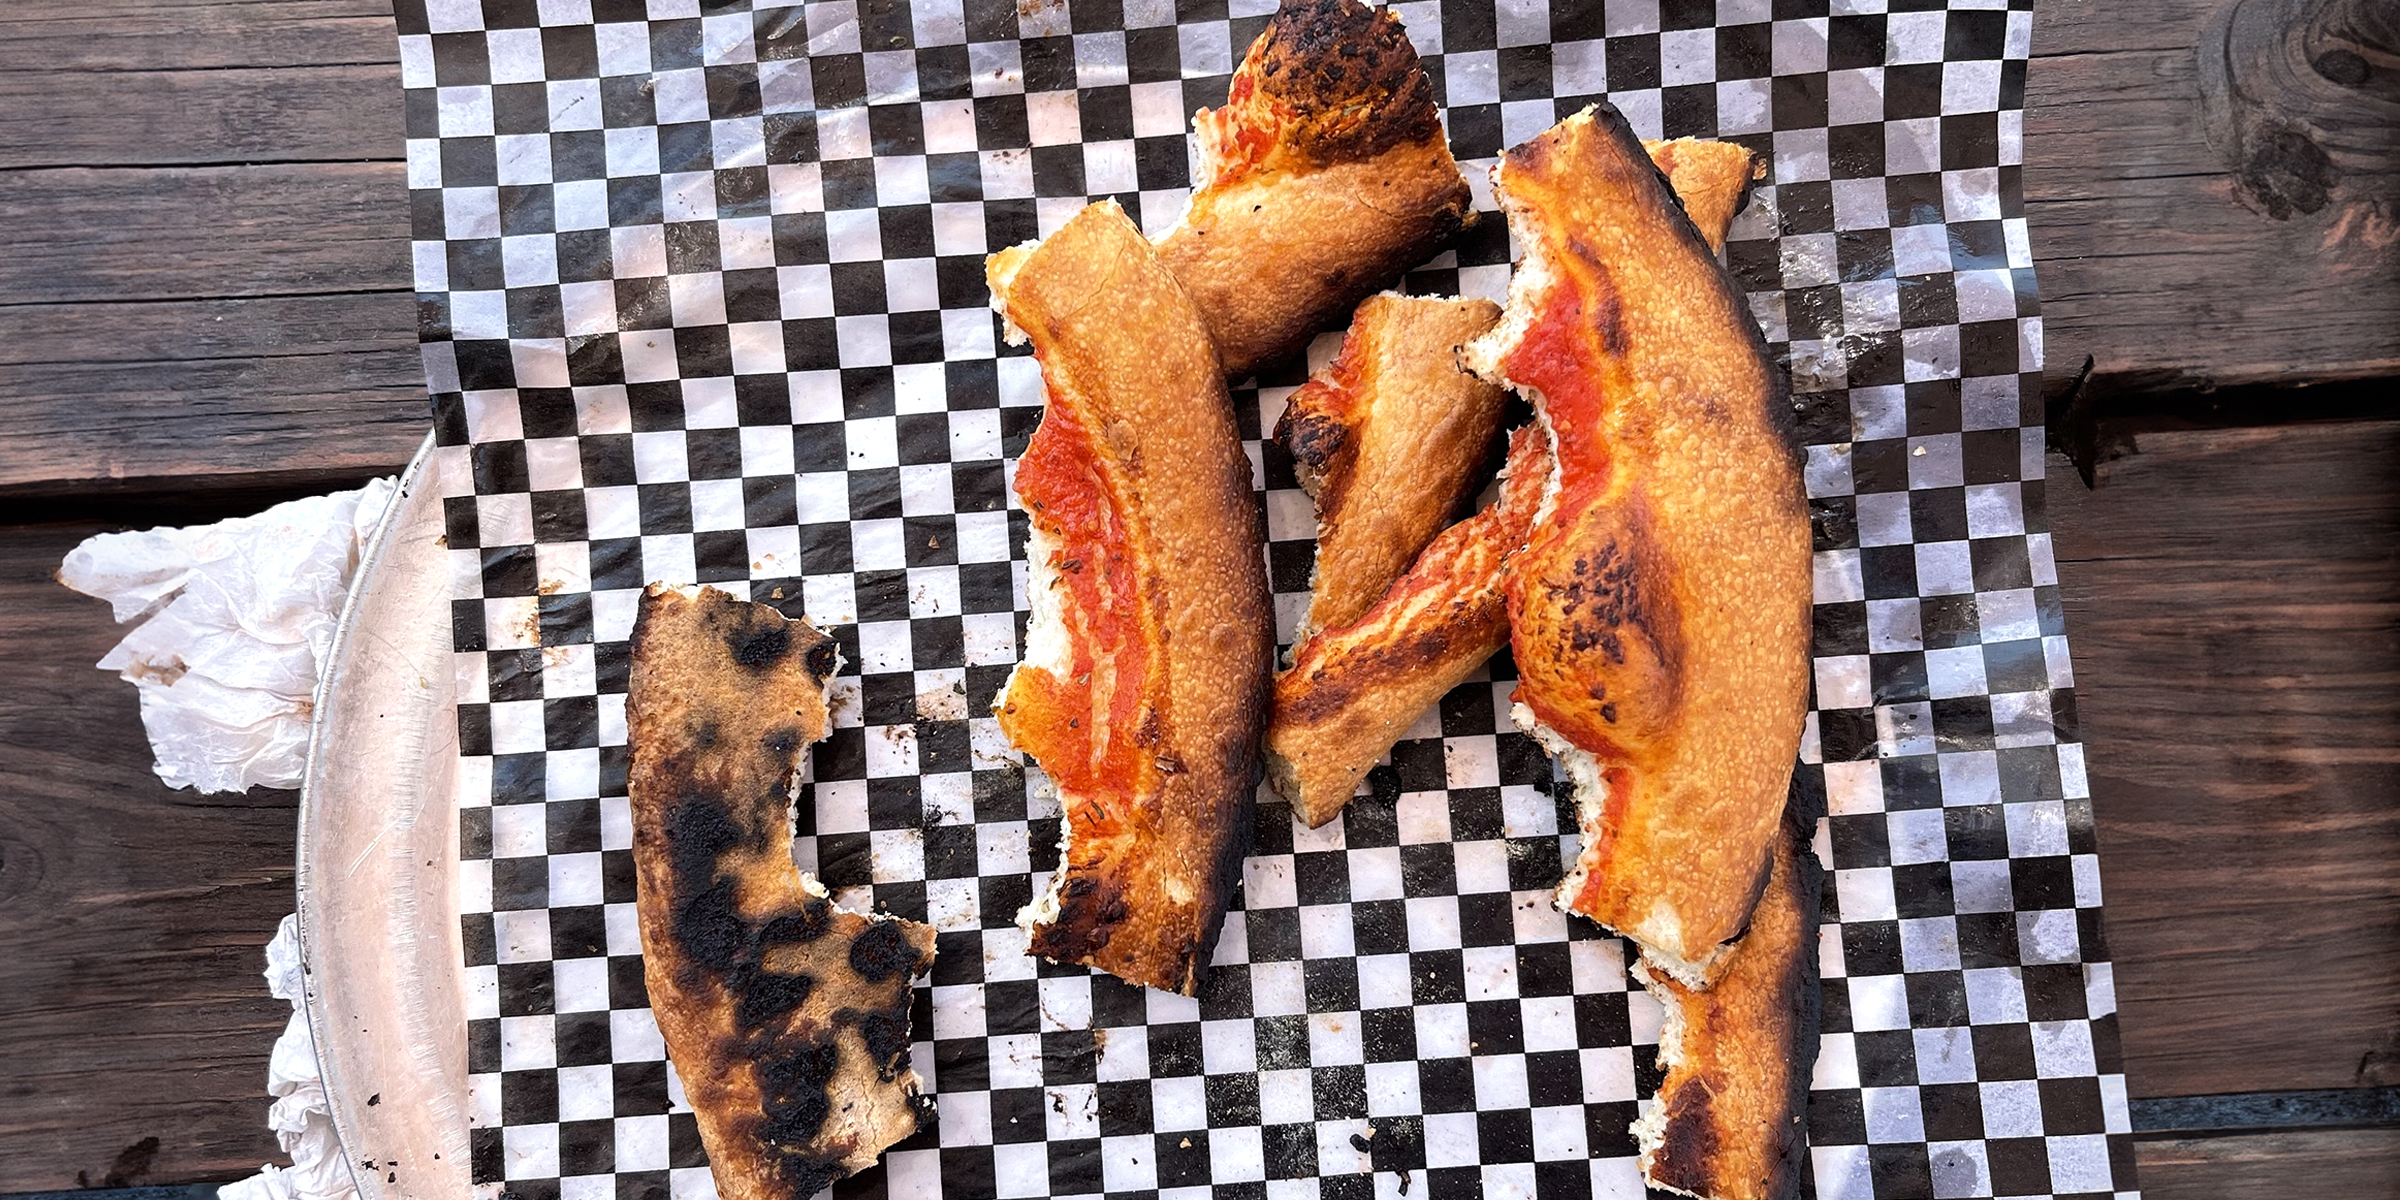 Un tas de croûtes de pizza brûlées | Source : Flickr.com/sarahstierch/CC BY 2.0